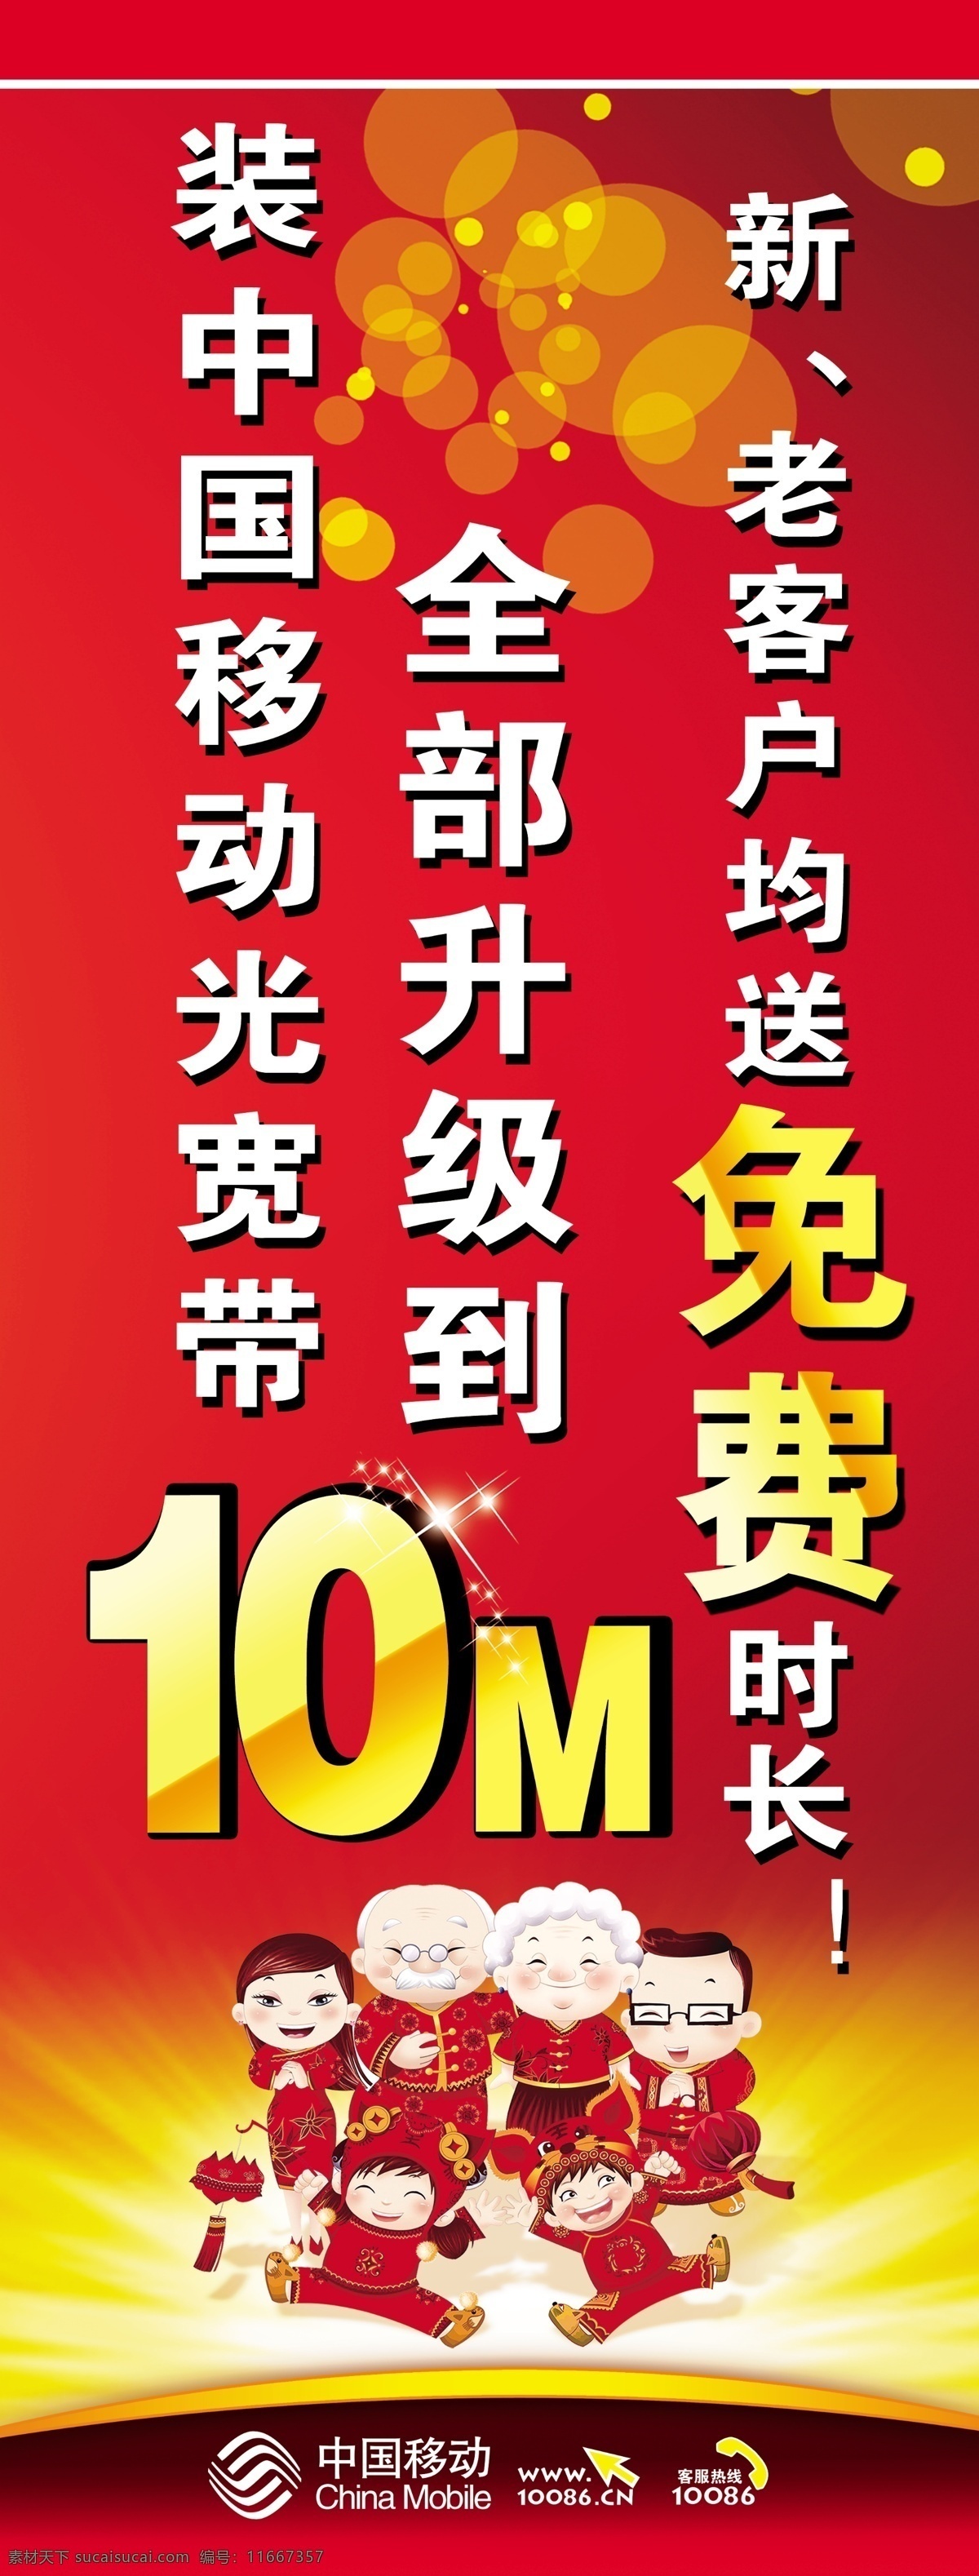 移动海报 中国移动 移动 升级 10m 海报 红色